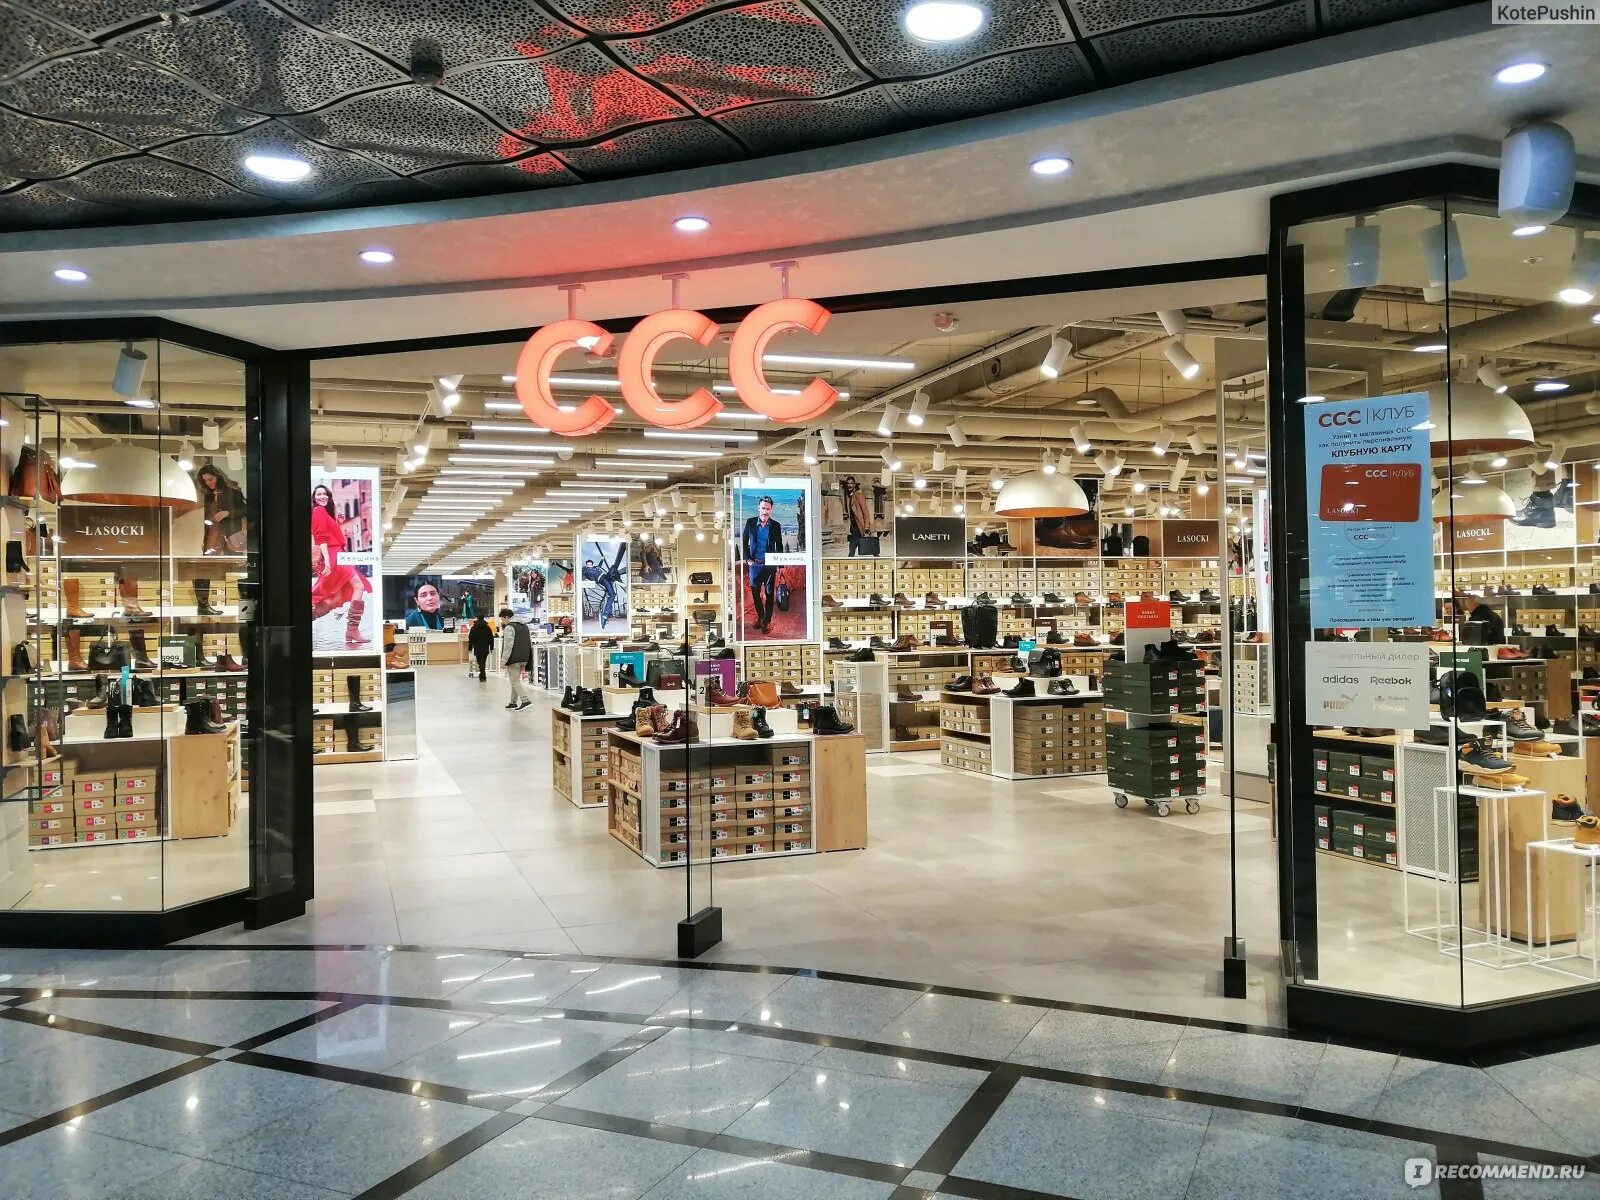 Ccc обувь. CCC обувной магазин. CCC обувь СПБ. Магазин ССС обувь в Москве. Магазины ССС В Санкт Петербурге.